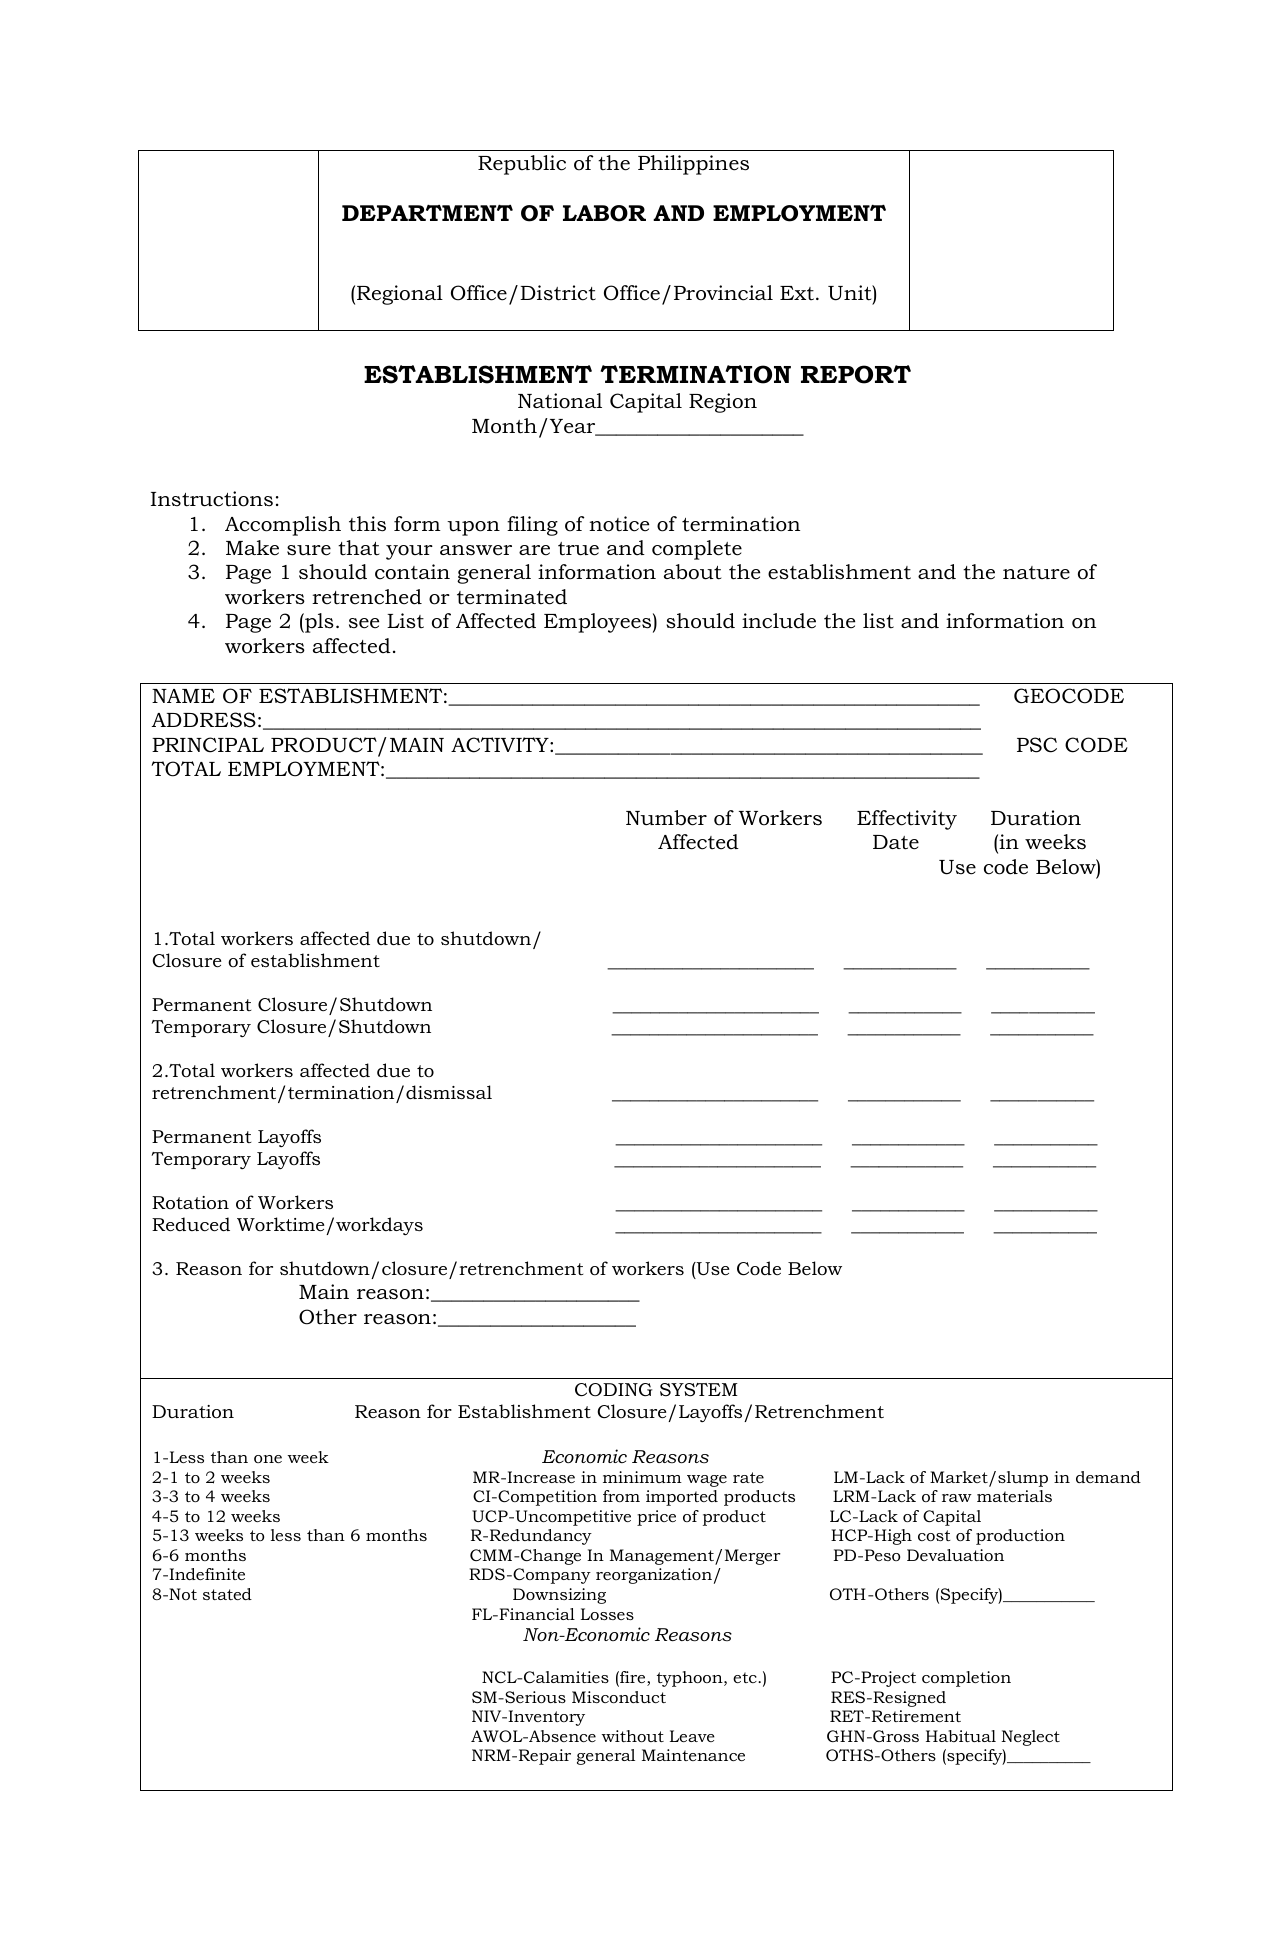 F0022 DOLE Form Establishment Termination Report